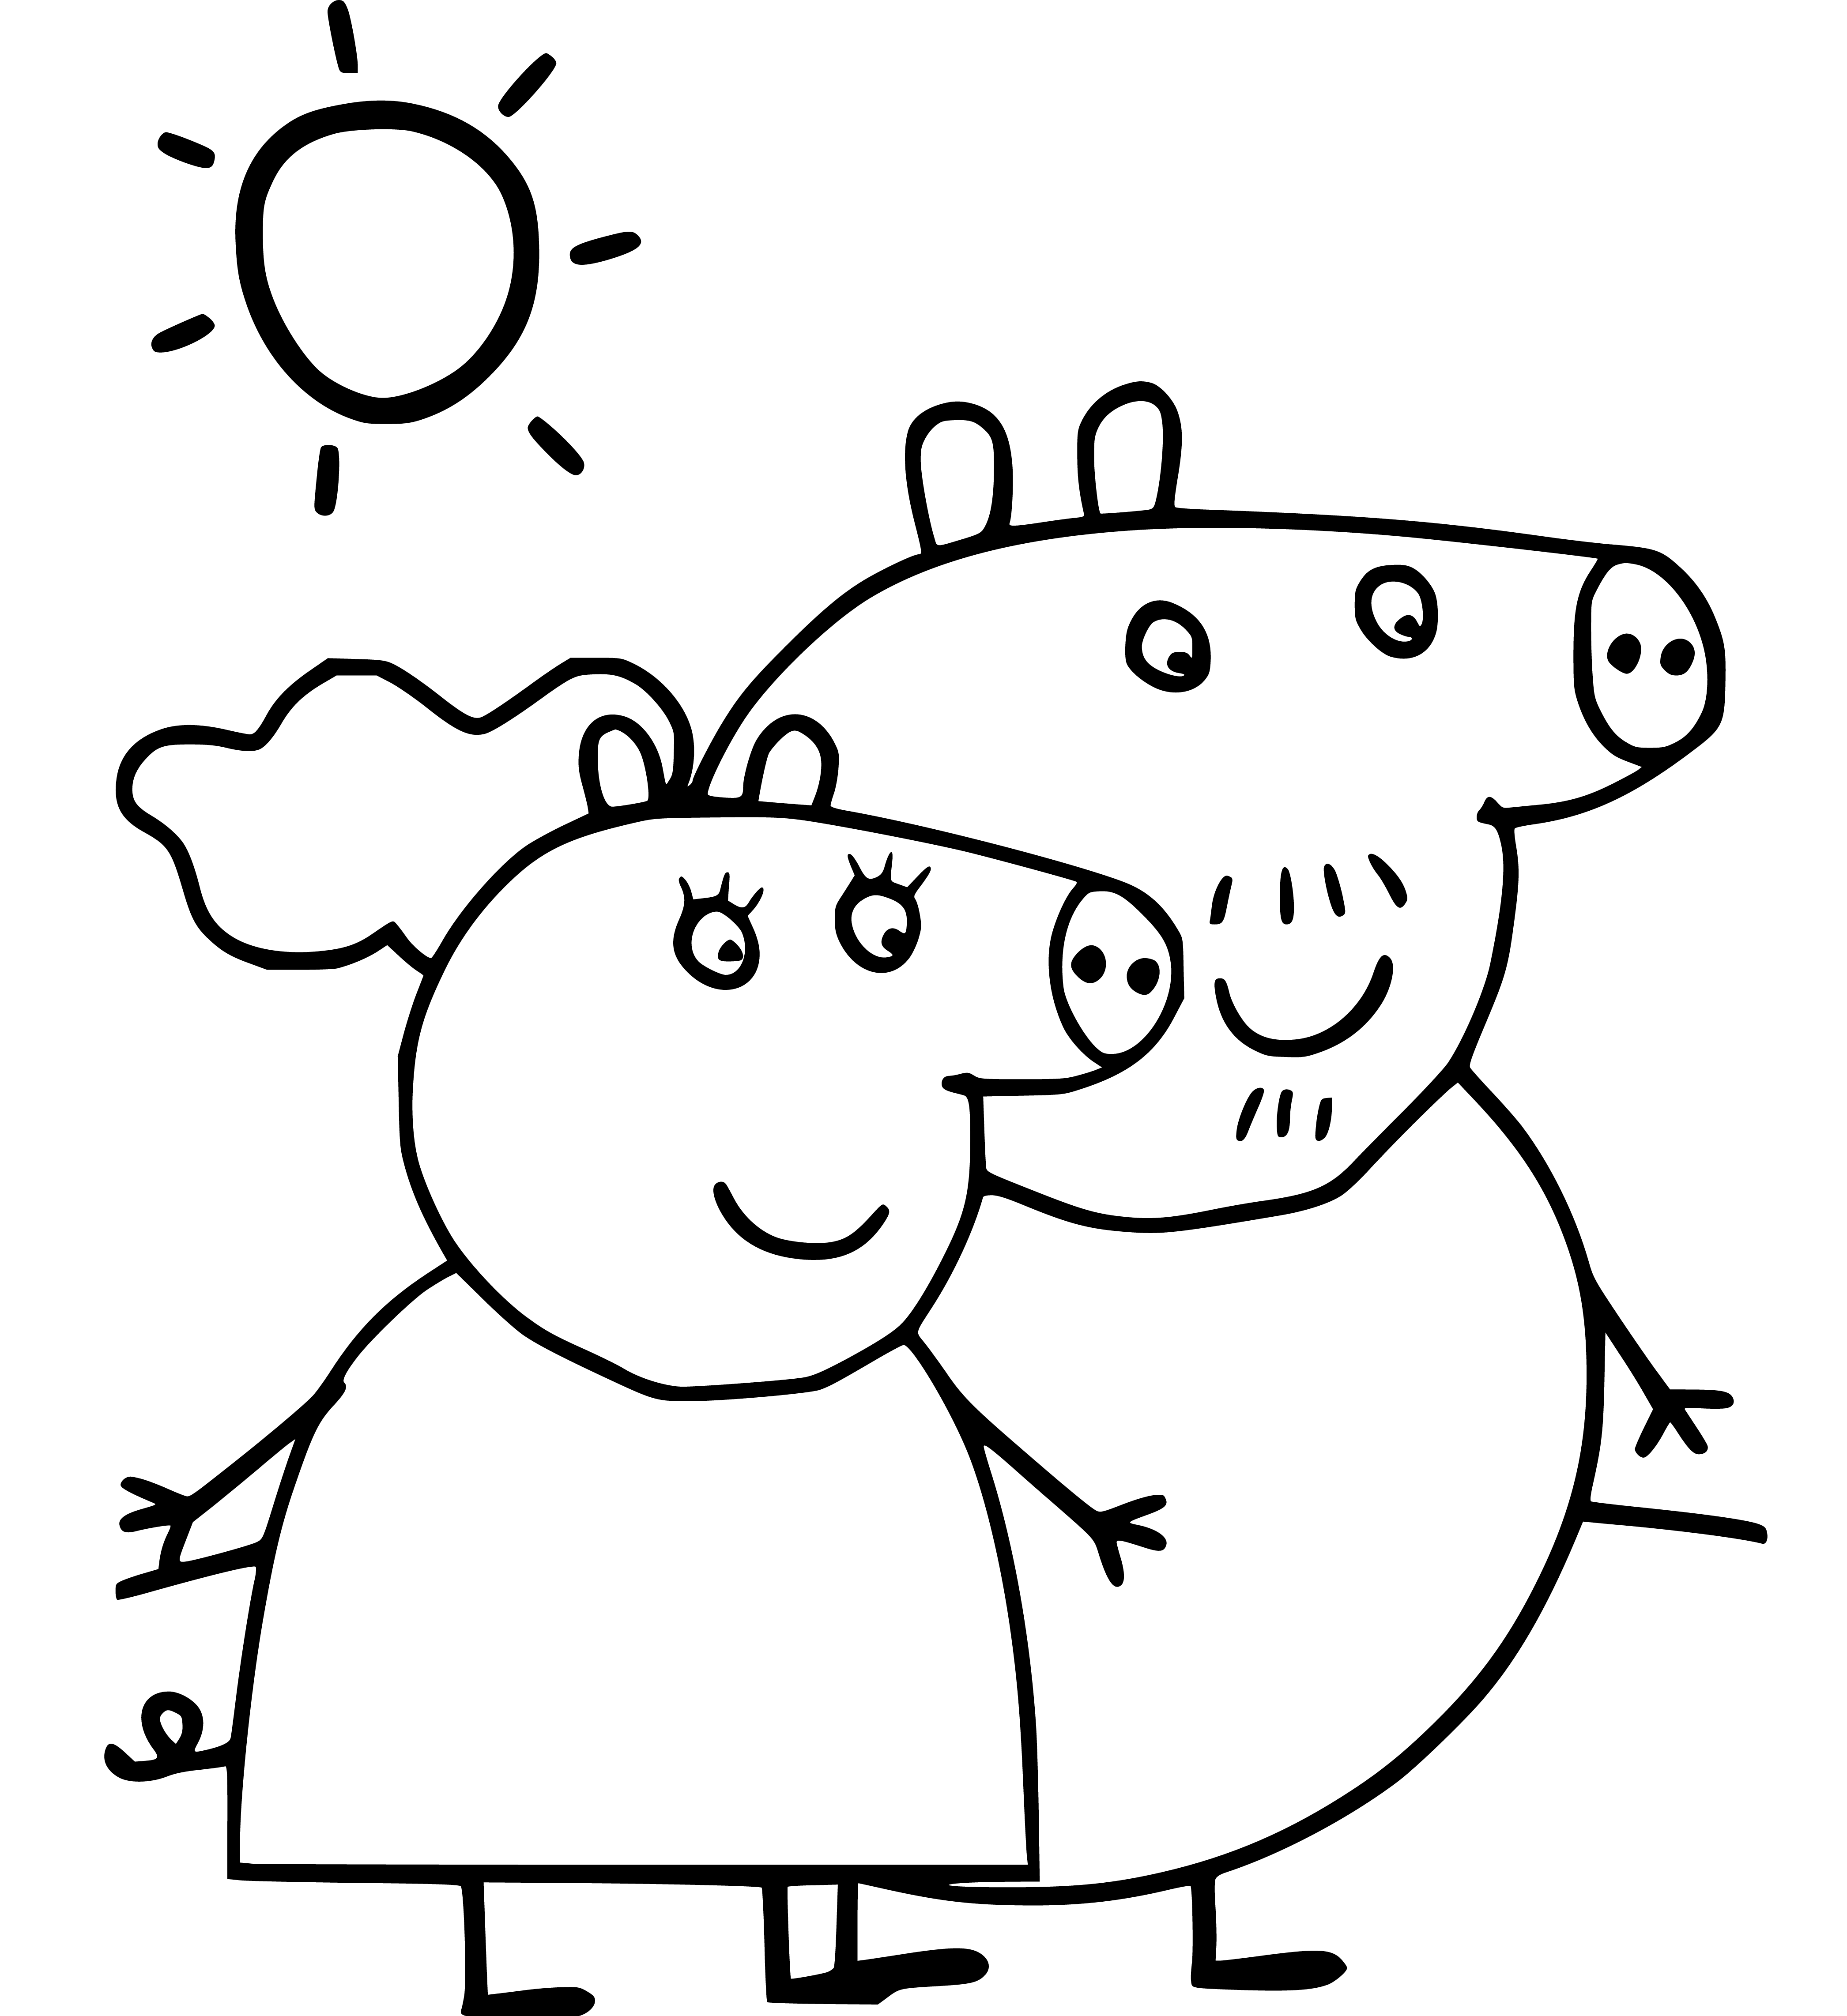 Granda Pig and Granny Pig - SheetalColor.com